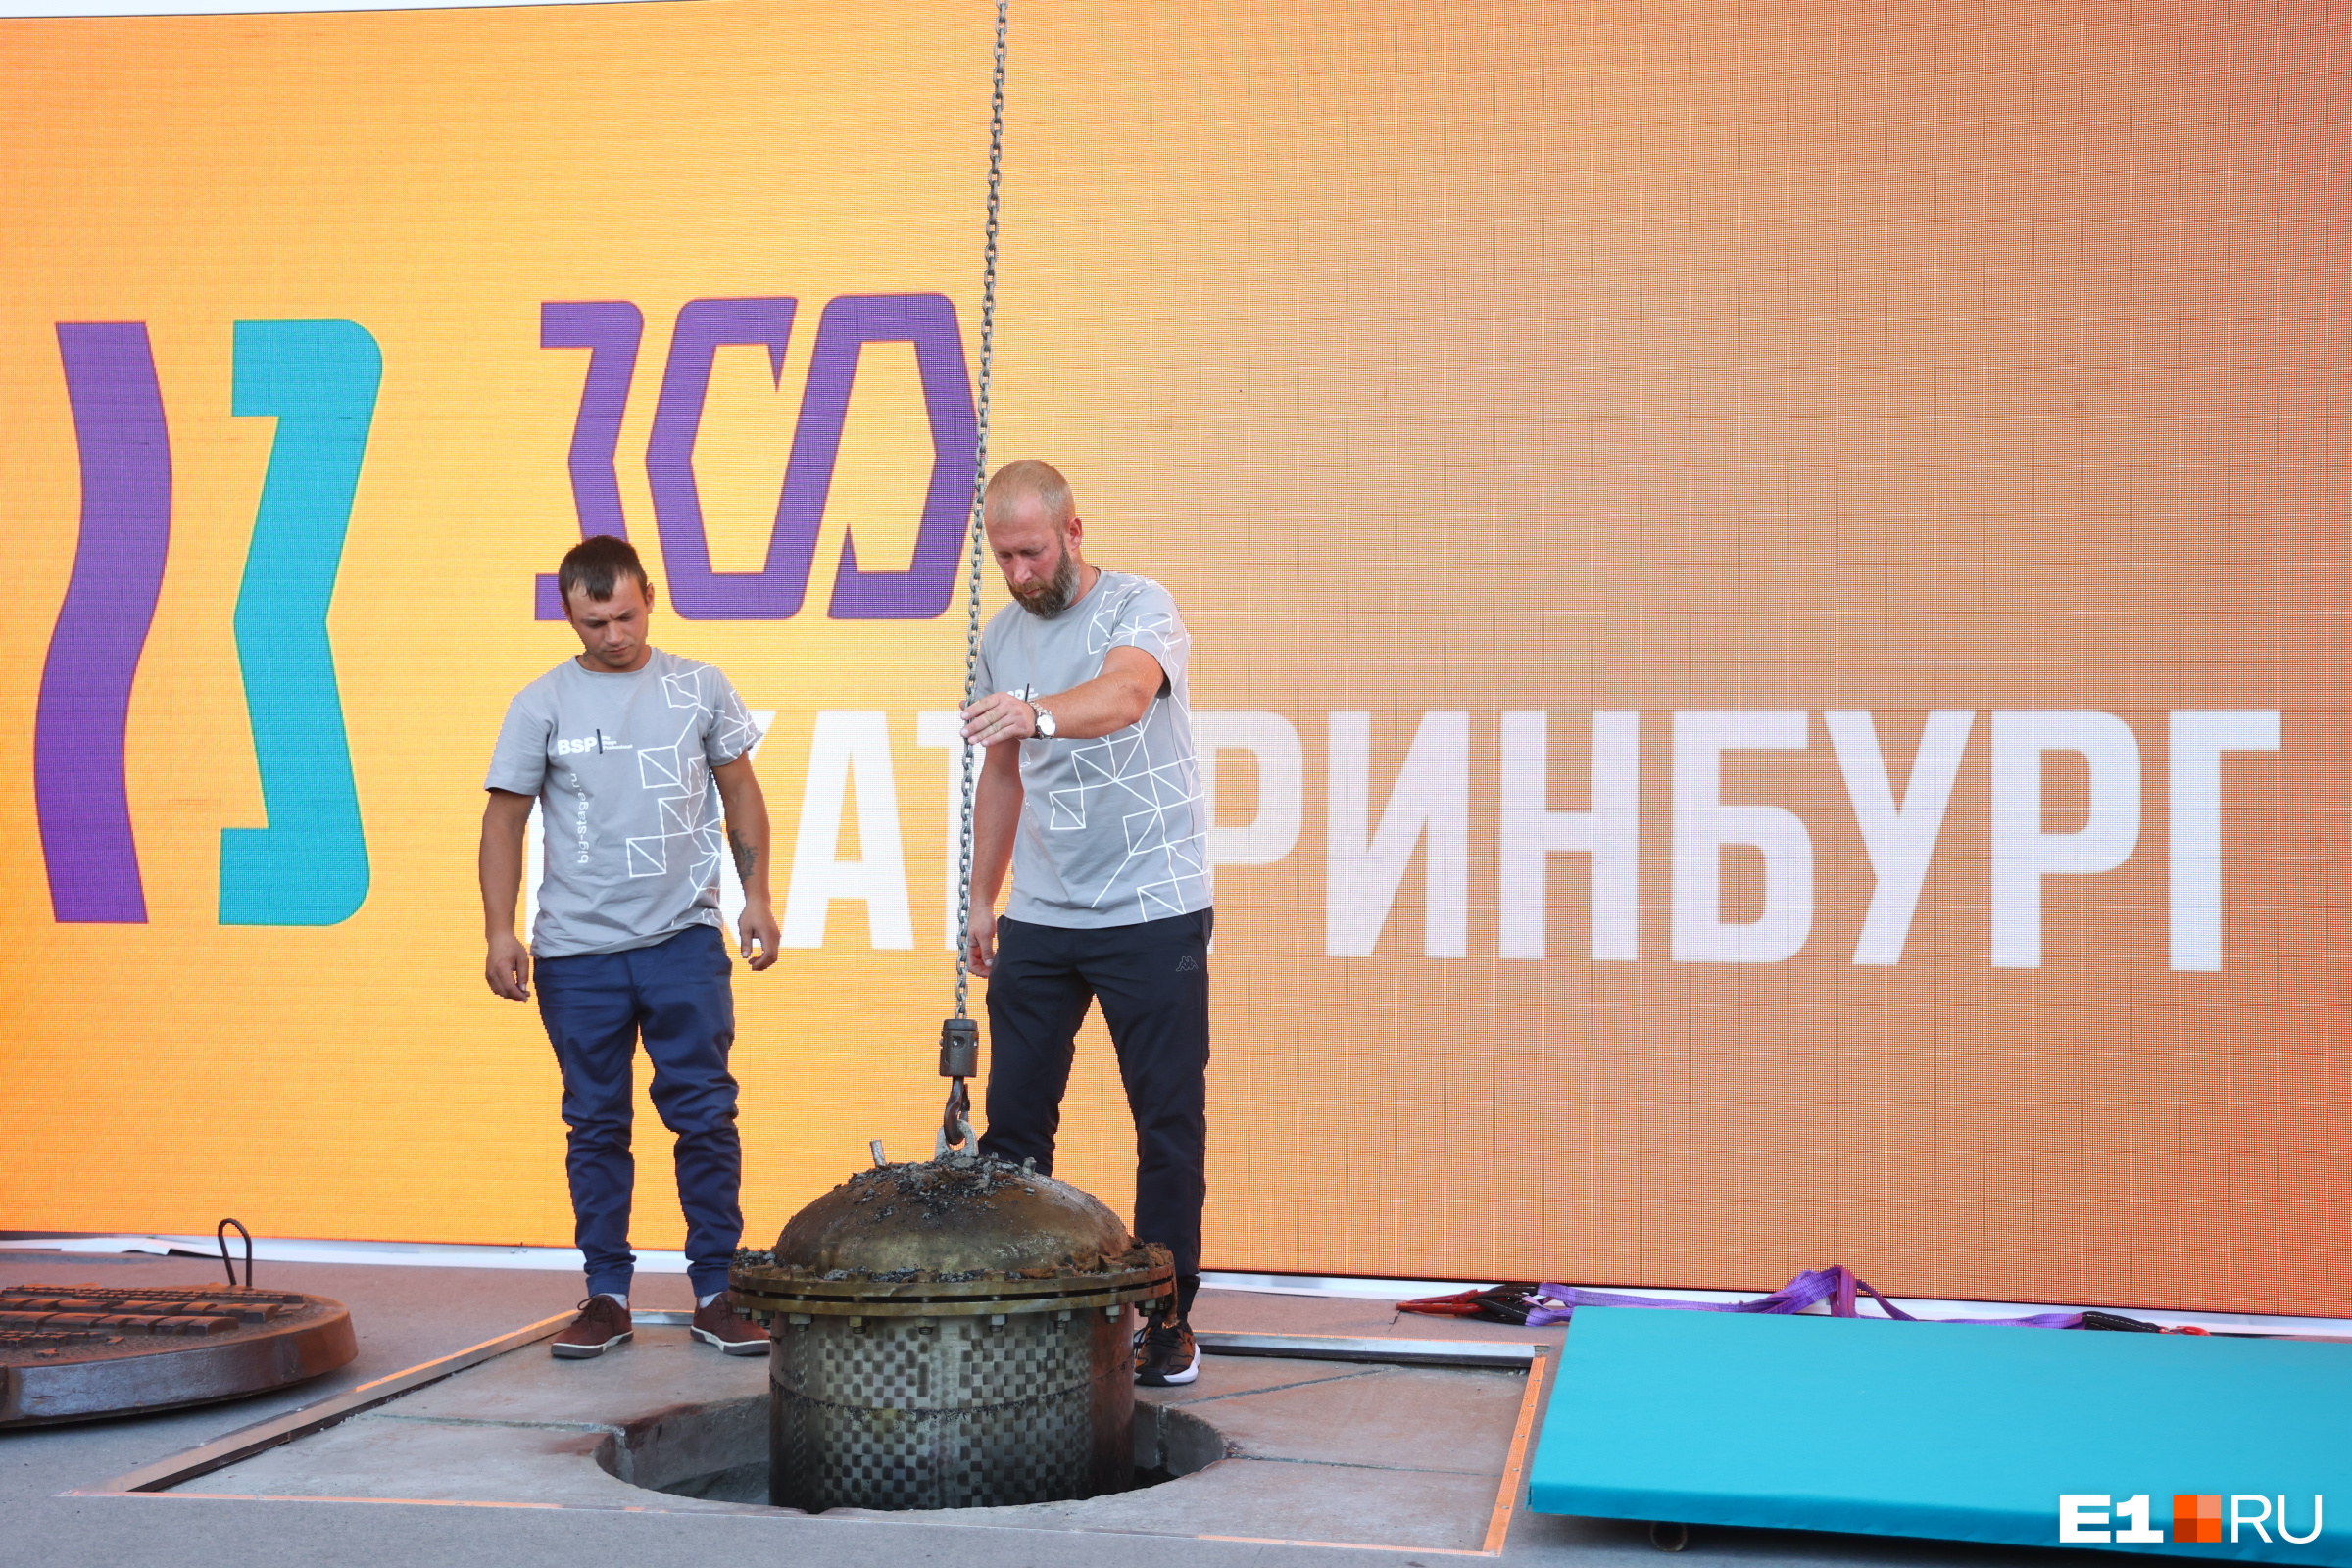 Достали — и привет: в Екатеринбурге вытащили из-под земли «капсулу времени» и оставили ее на Плотинке